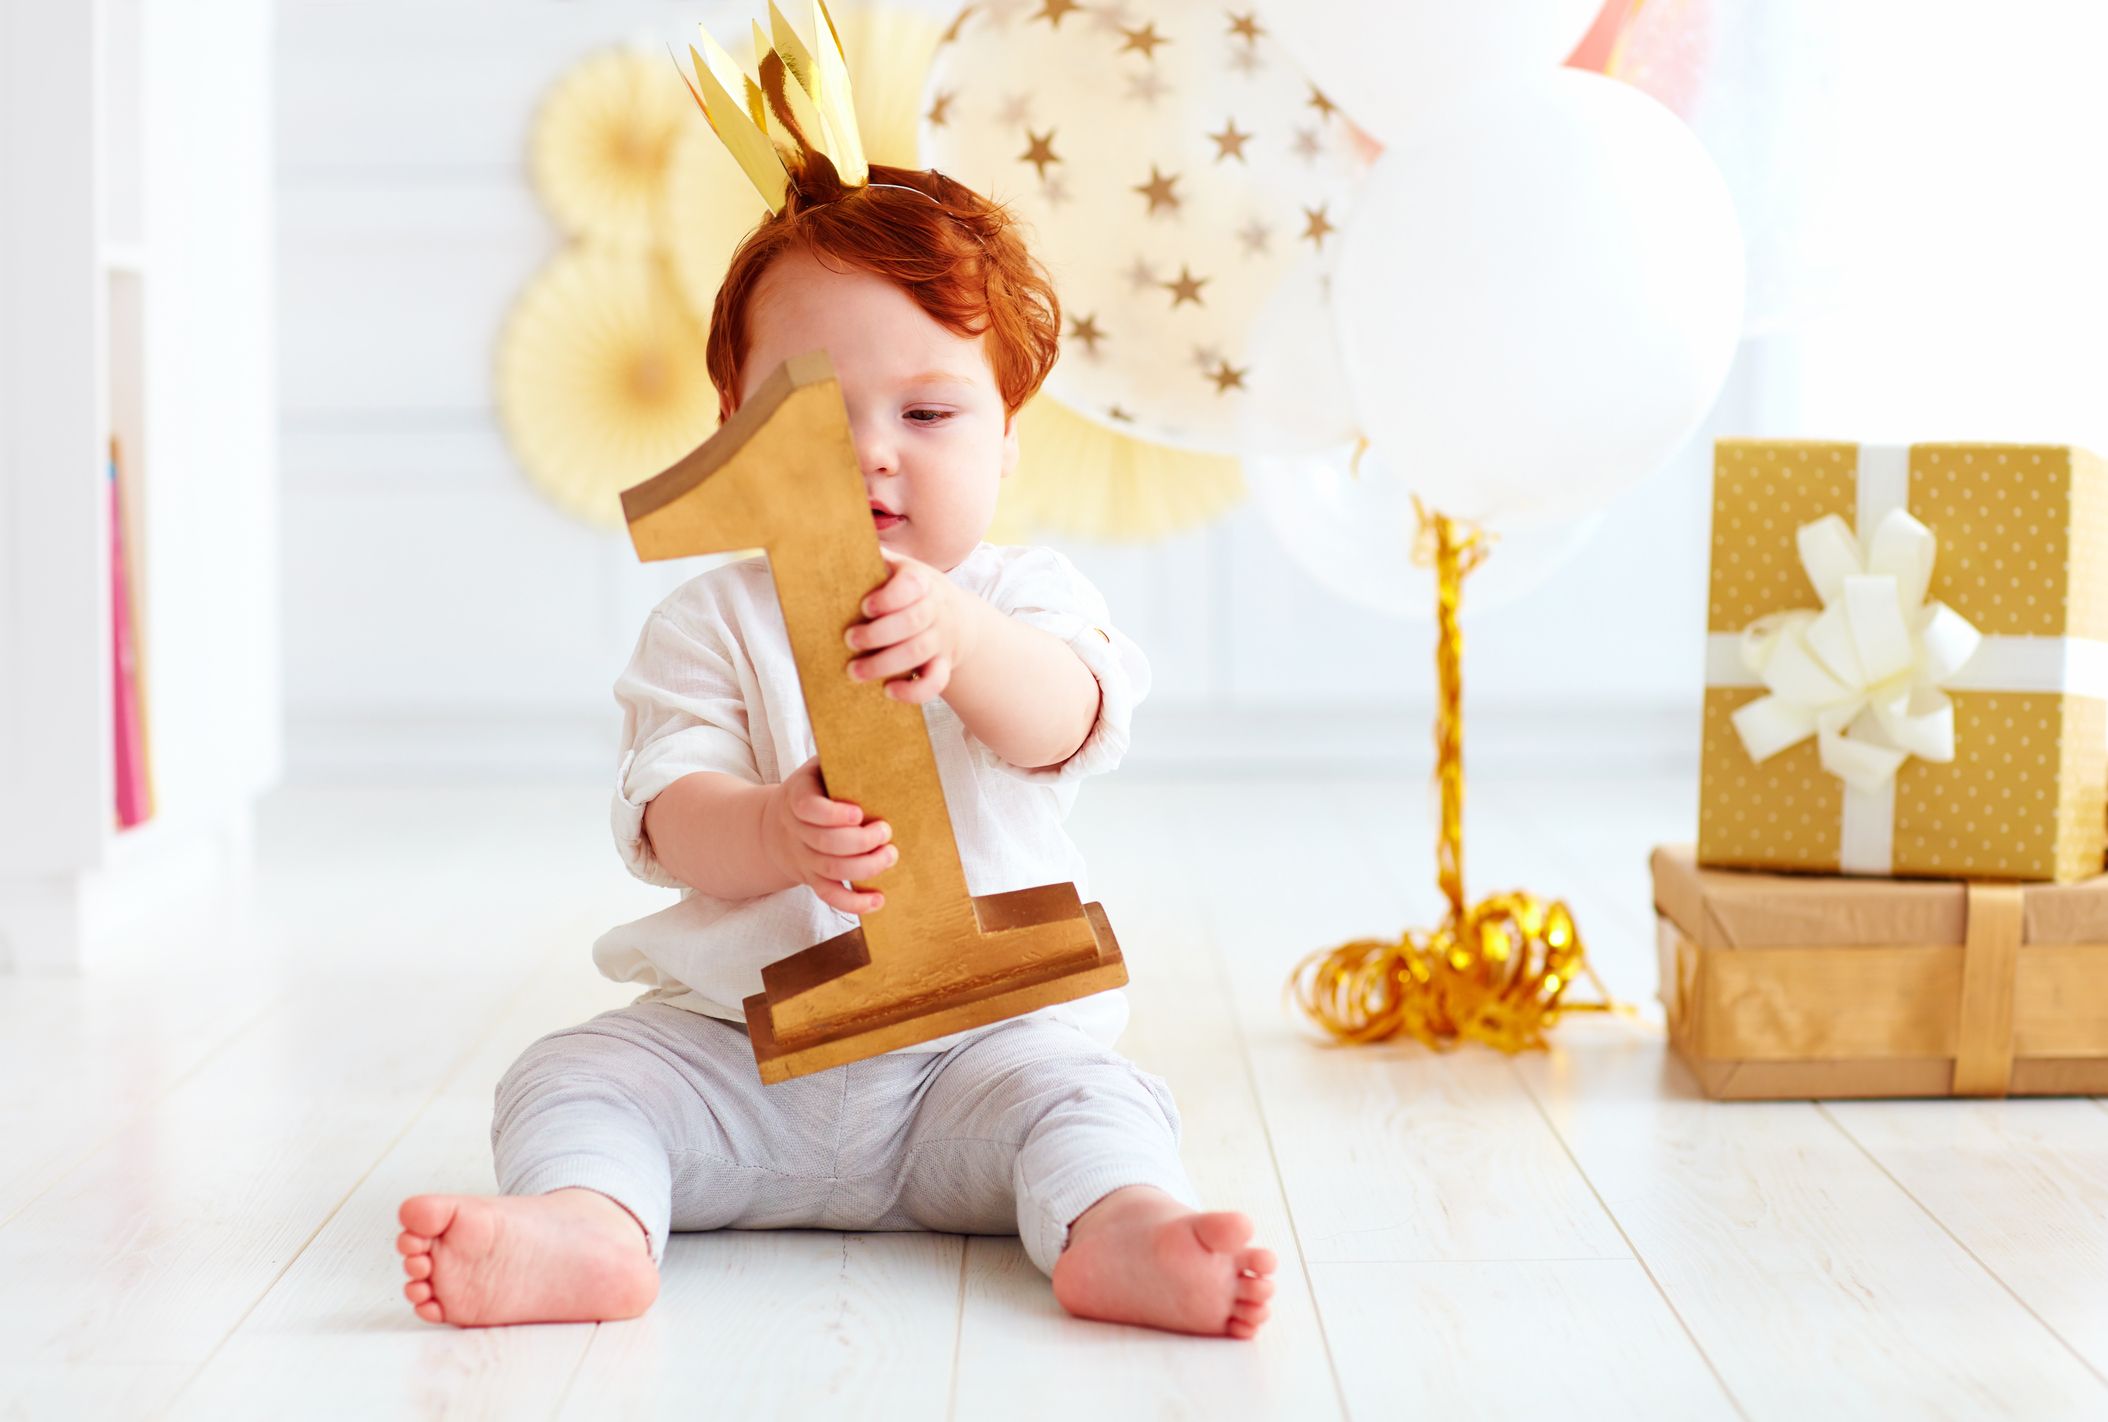 Trouver un cadeau bébé 1 an : 5 conseils avisés ! - Blog